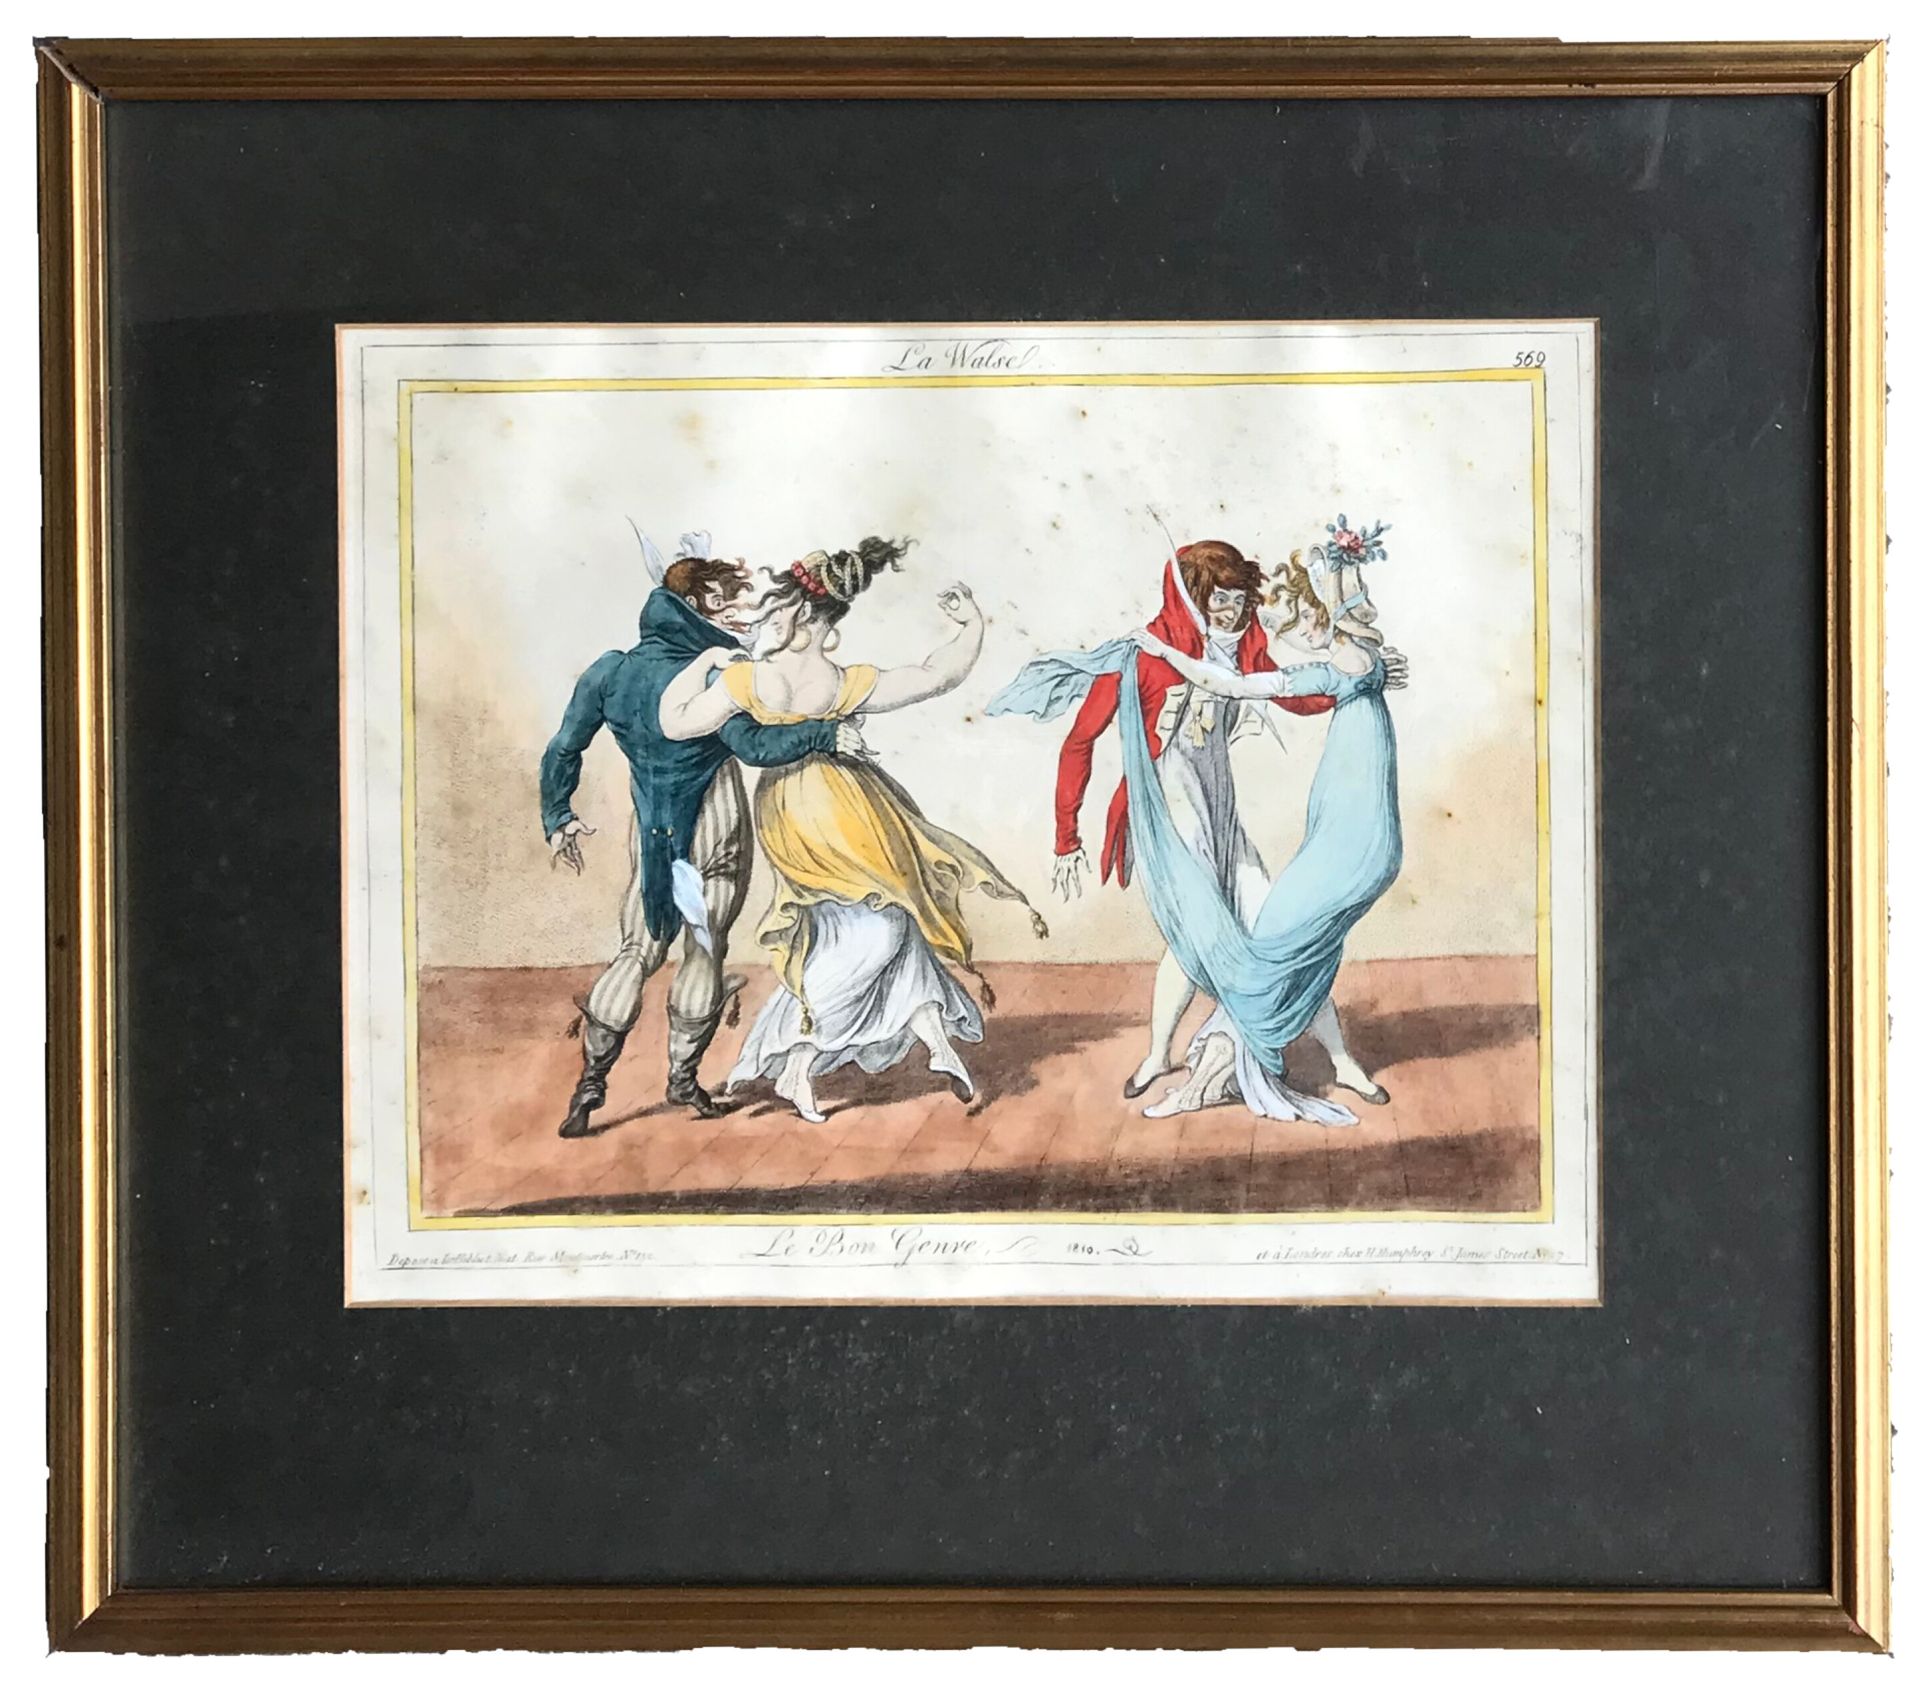 DE LA MESANGERE Nach Pierre de la MESANGERE (1761-1831)

Die Walse aus der Serie&hellip;